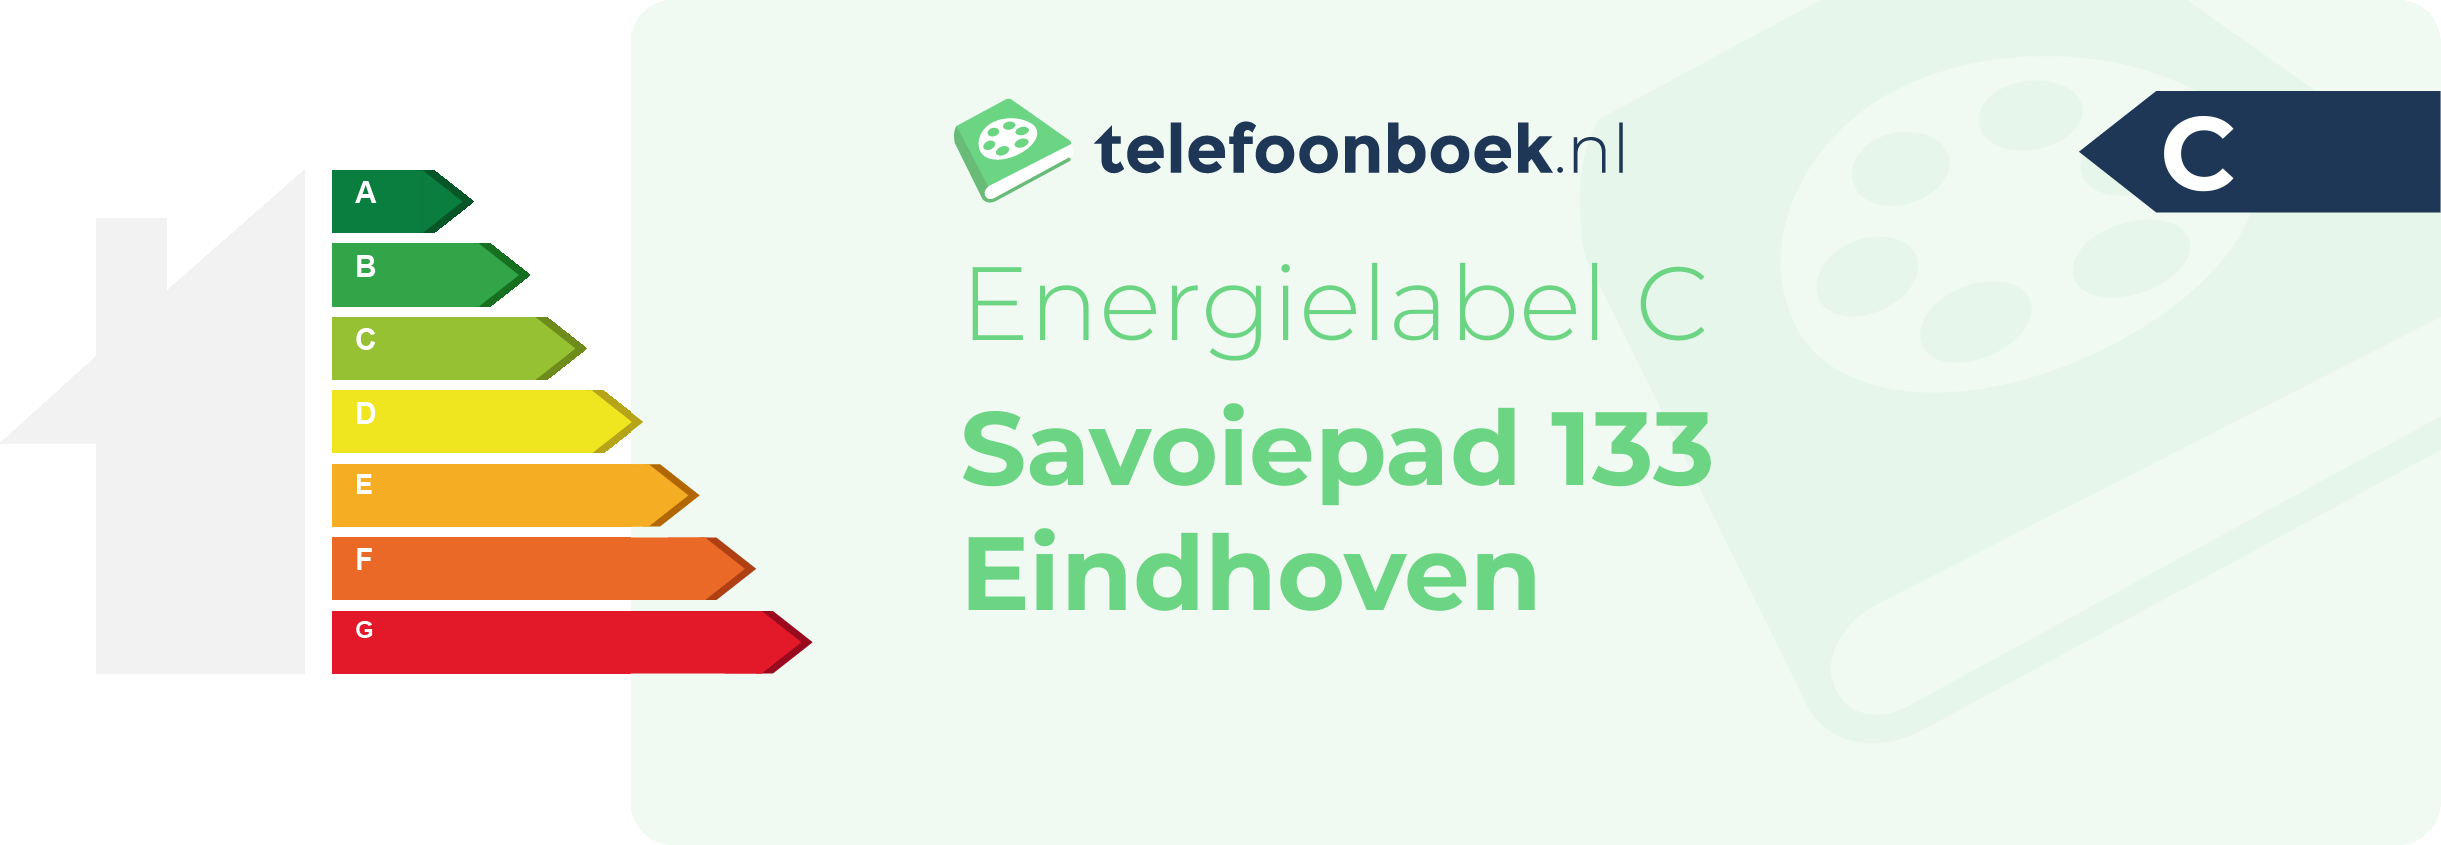 Energielabel Savoiepad 133 Eindhoven